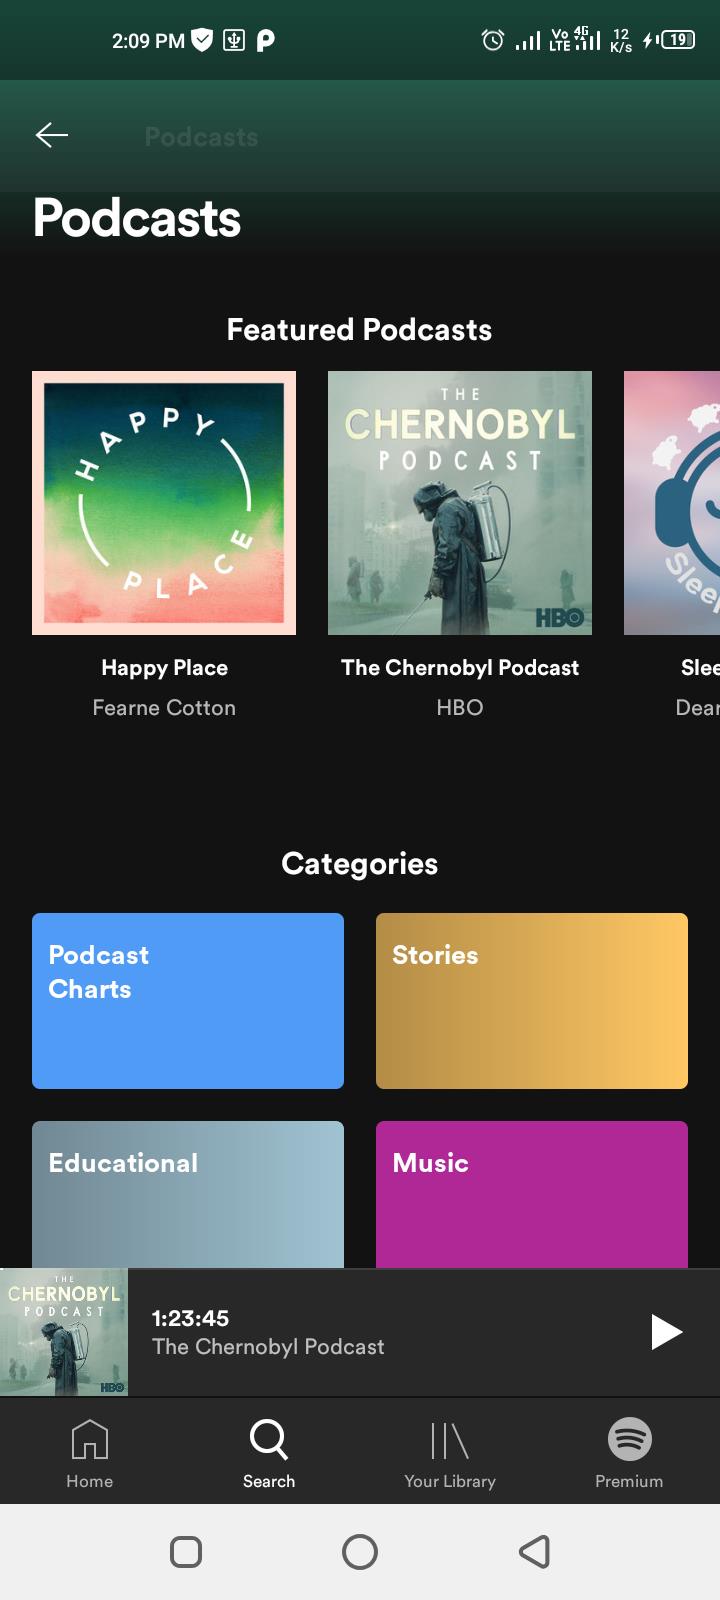 Jak wyszukiwać, śledzić i pobierać podcasty w Spotify?